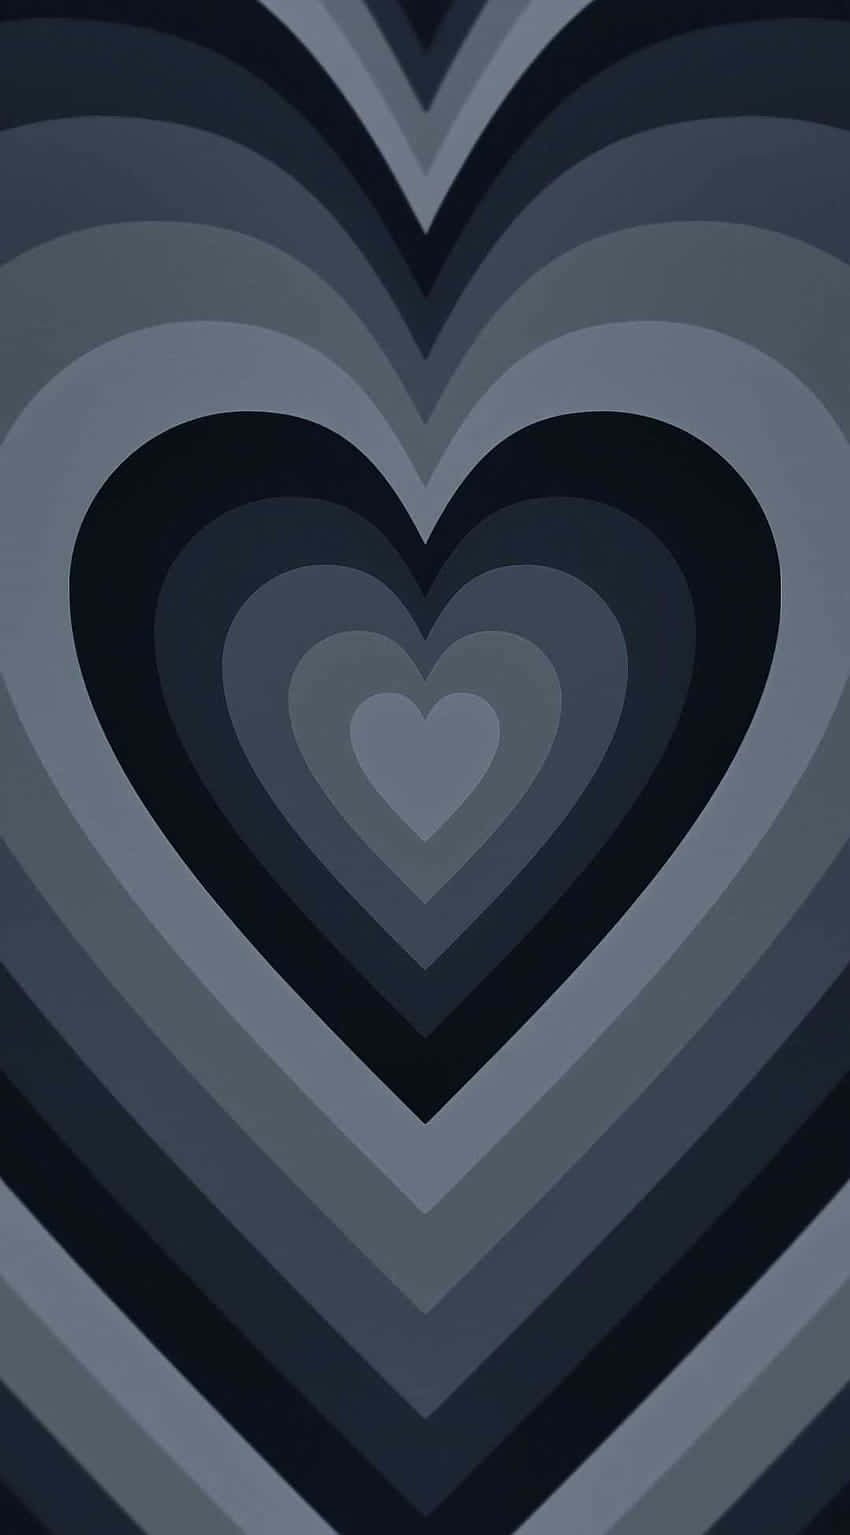 Wallpaperensfärgad Iphone-bakgrund Med Svart Hjärta. Wallpaper